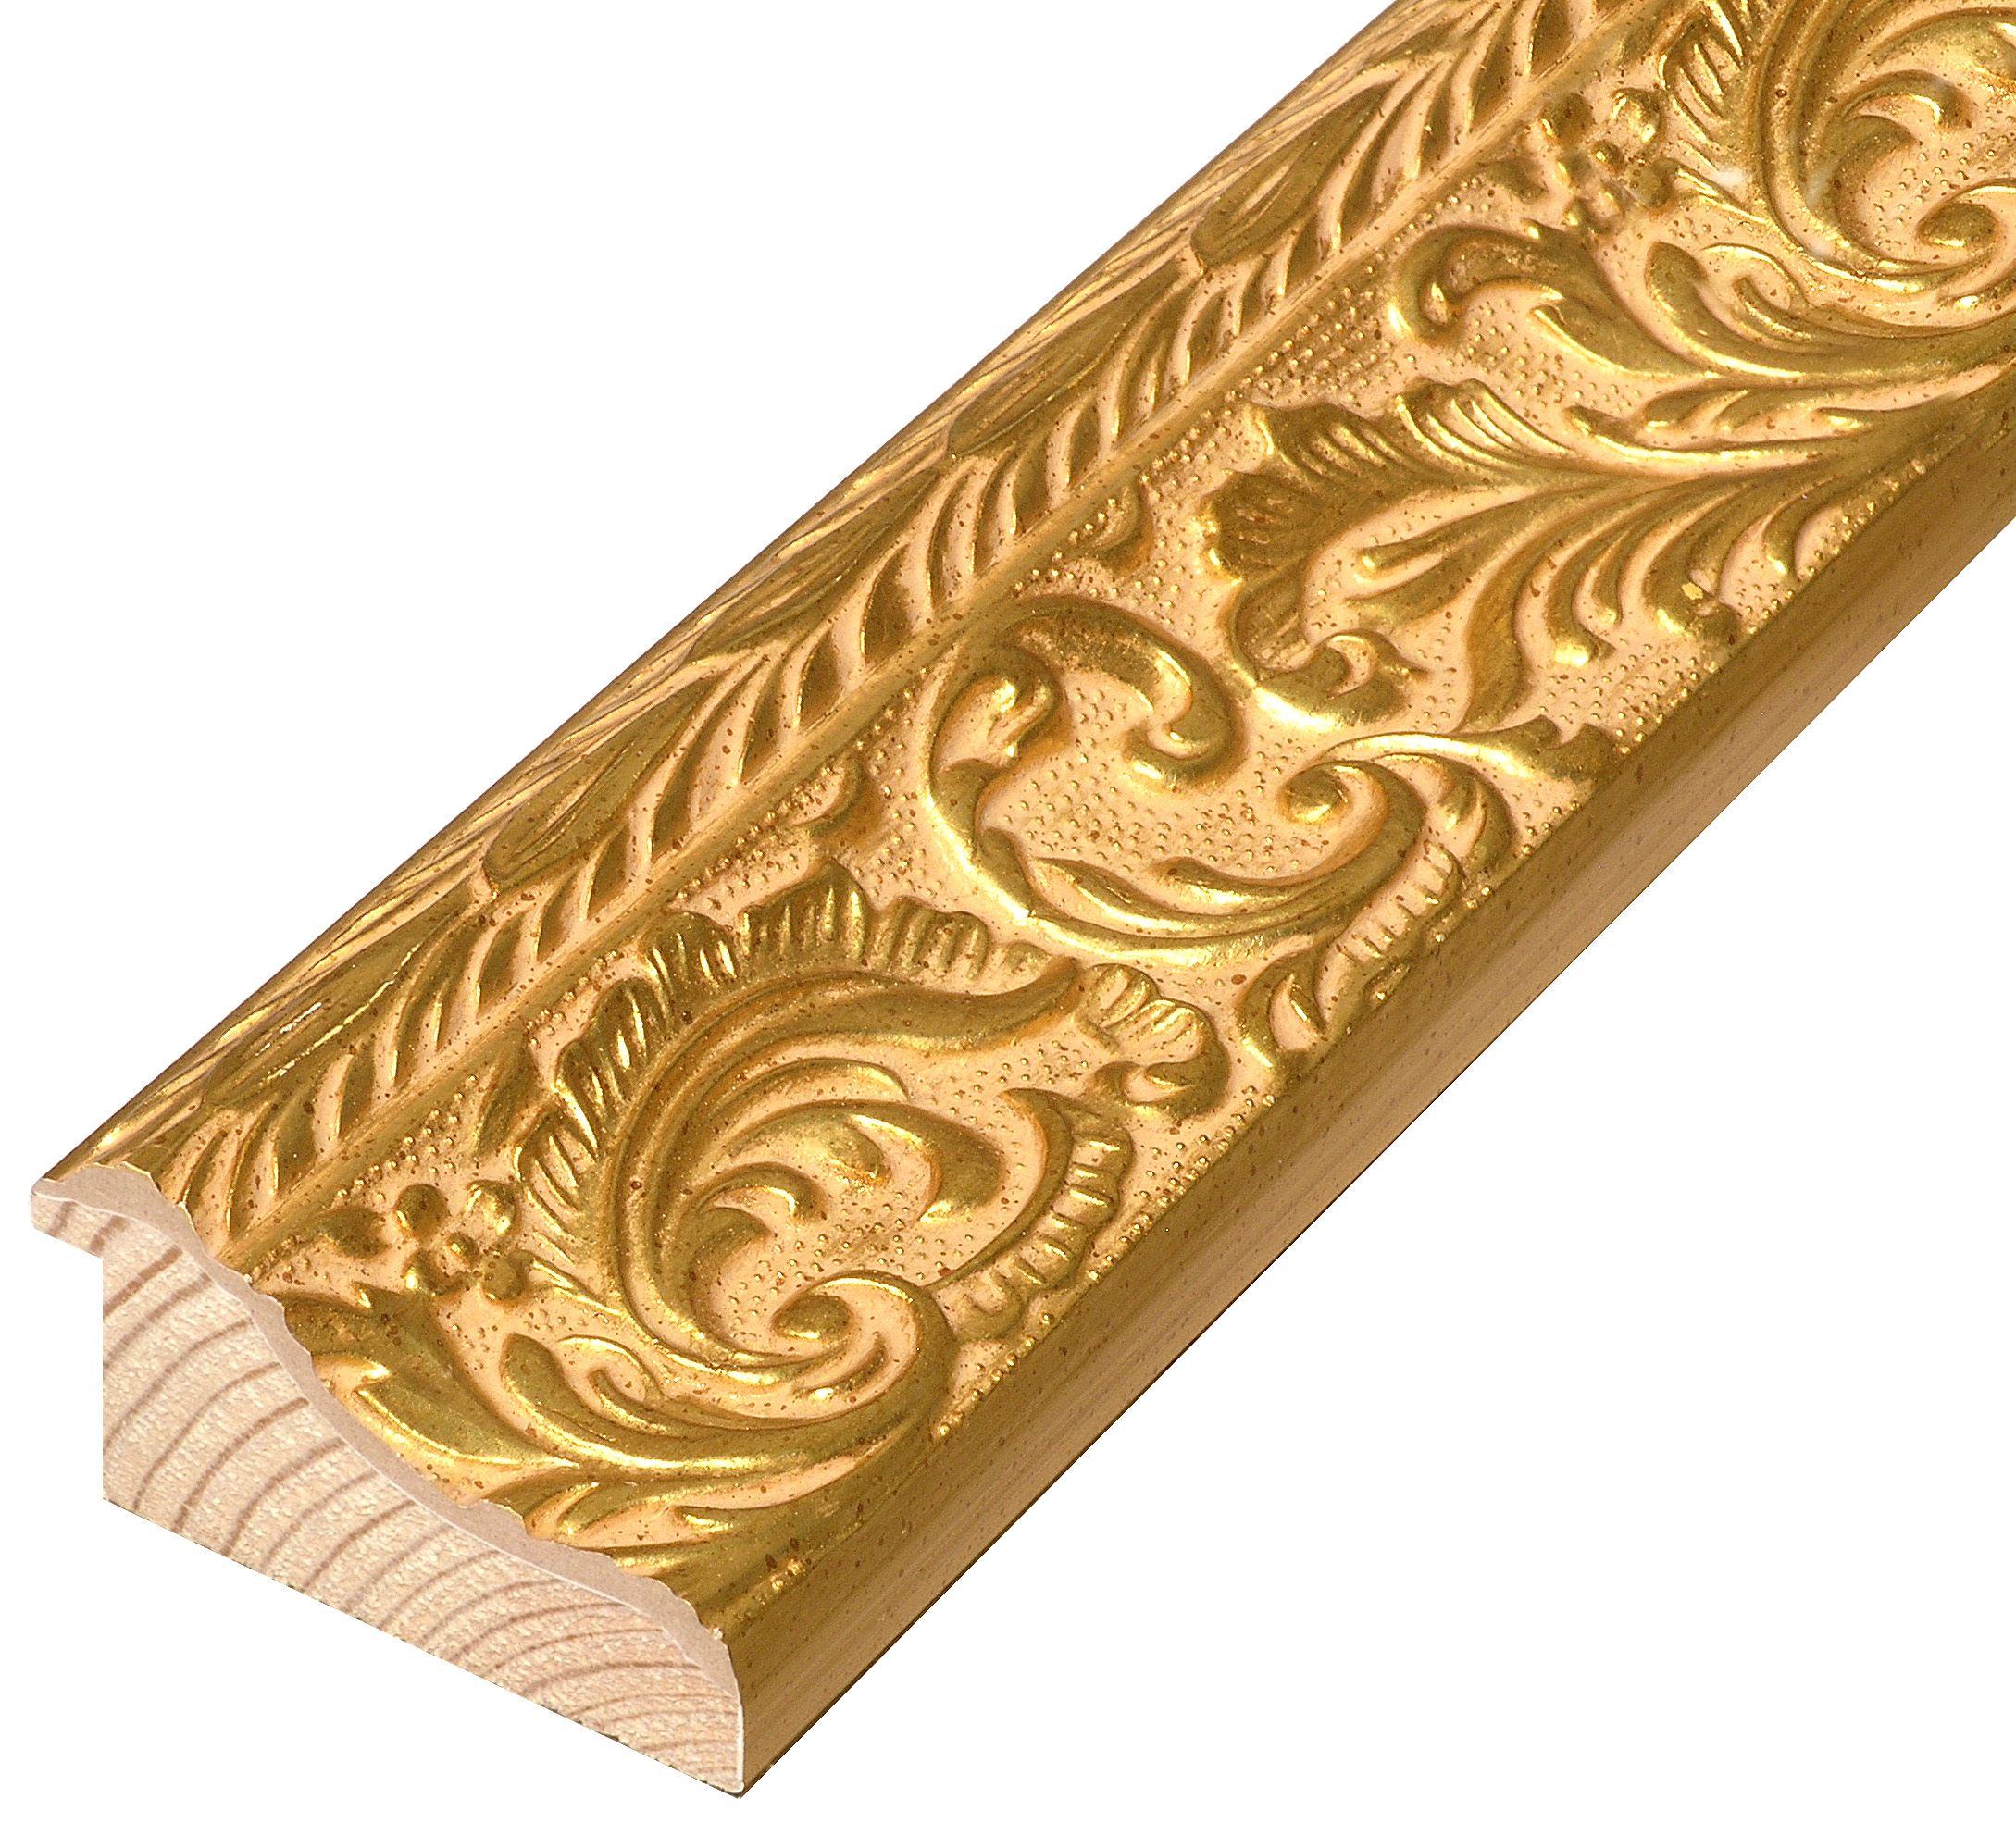 Letvica bor spojeni širina 69 mm vis.35 - zlato sa reljefnim ukrasom